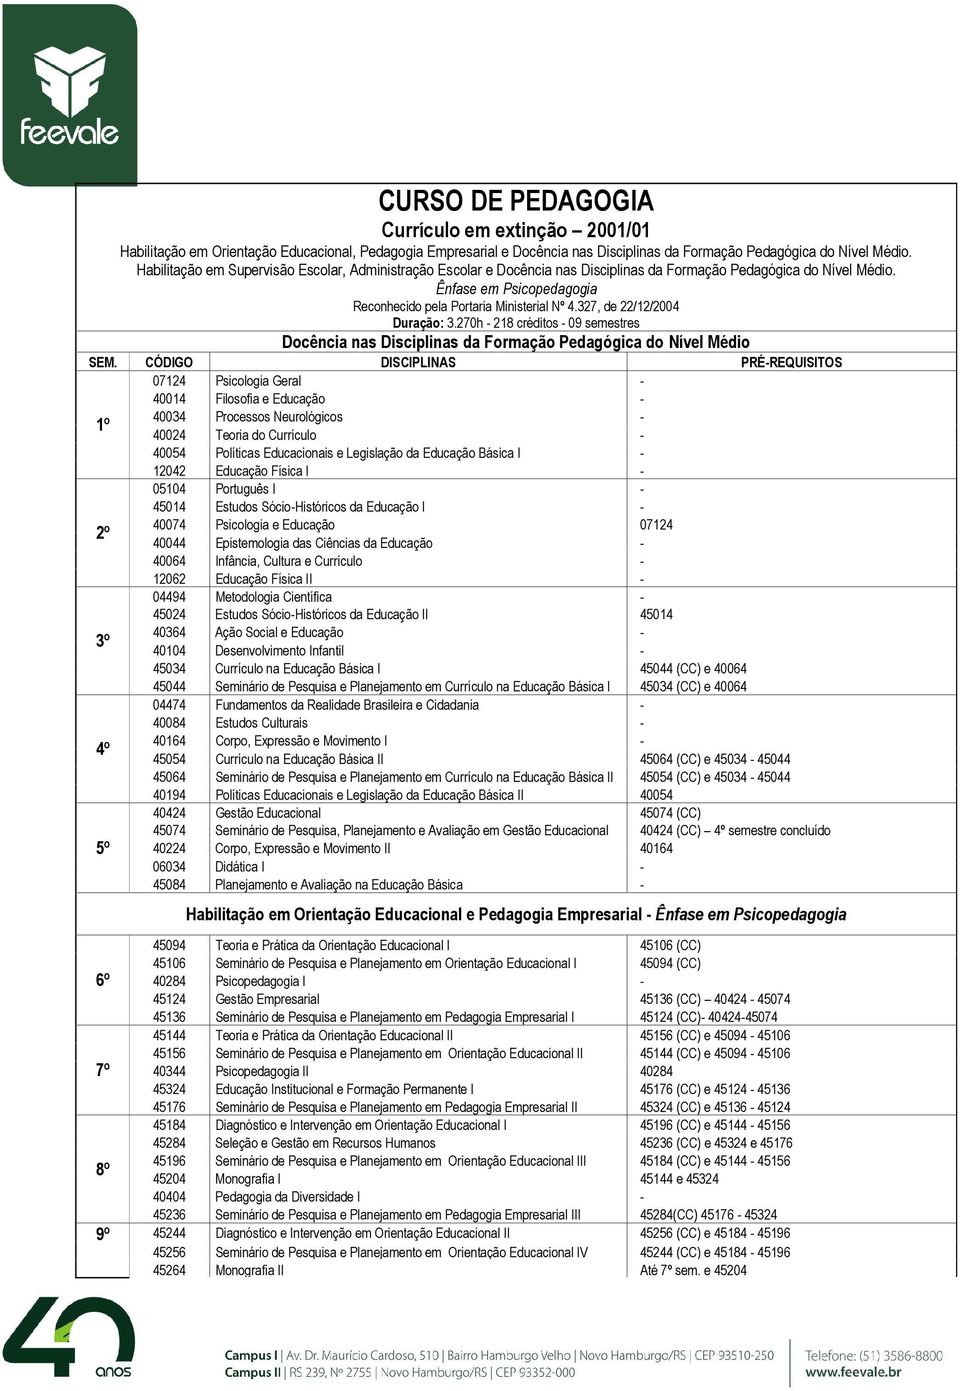 327, de 22/12/2004 Duração: 3.270h - 218 créditos - 09 semestres Docência nas Disciplinas da Formação Pedagógica do Nível Médio SEM.